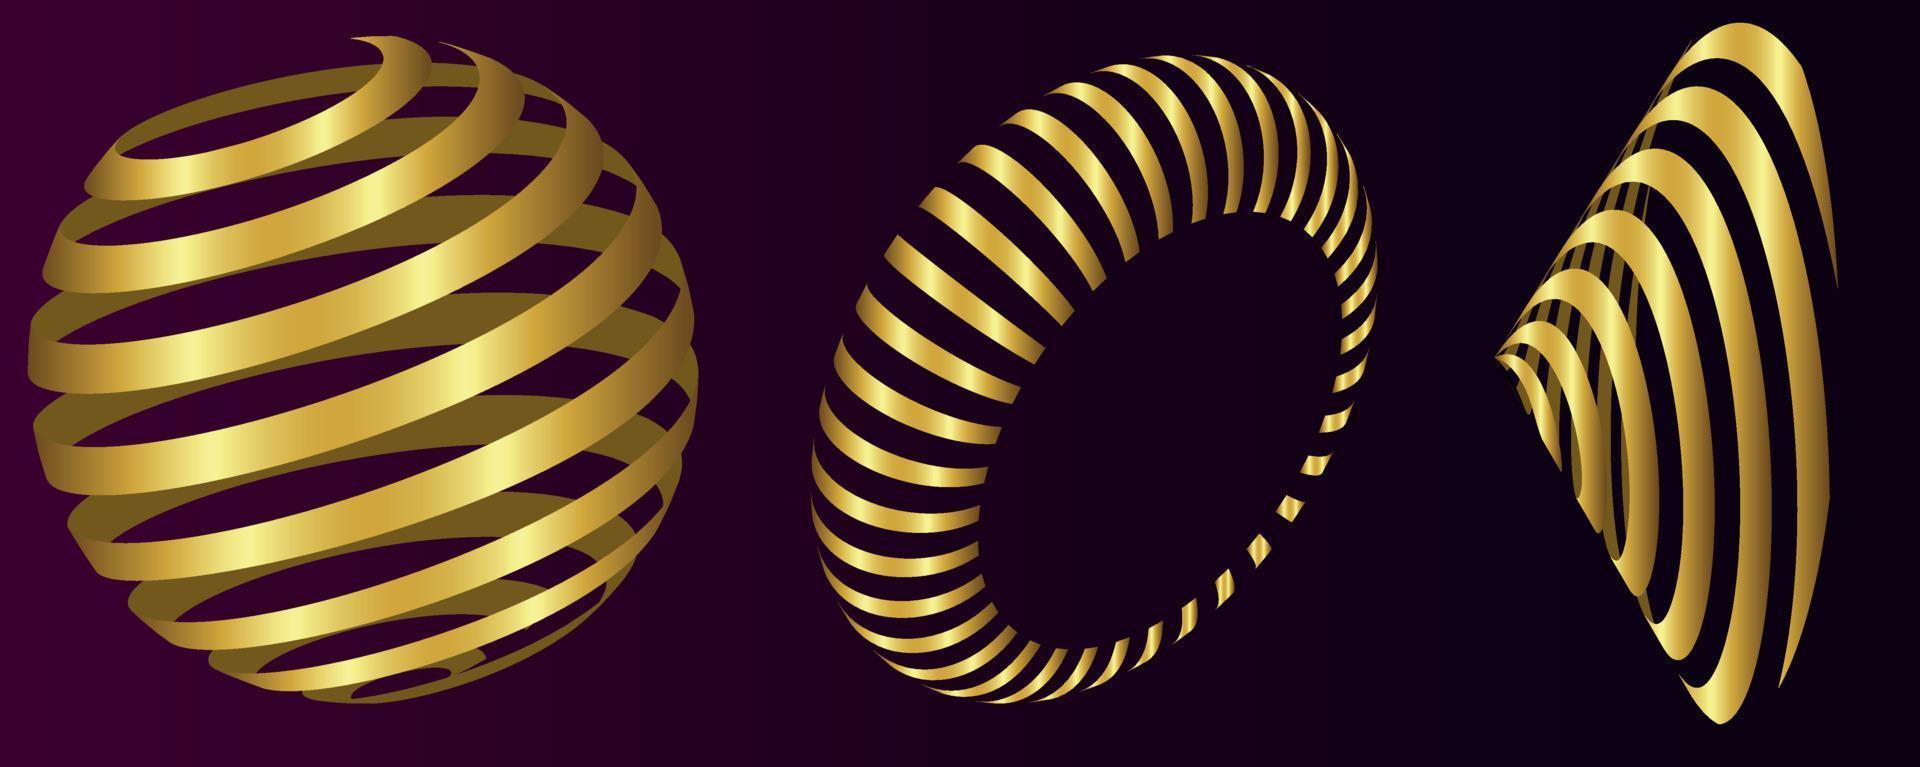 Vektordatei mit 3D-Spiralformen vektor